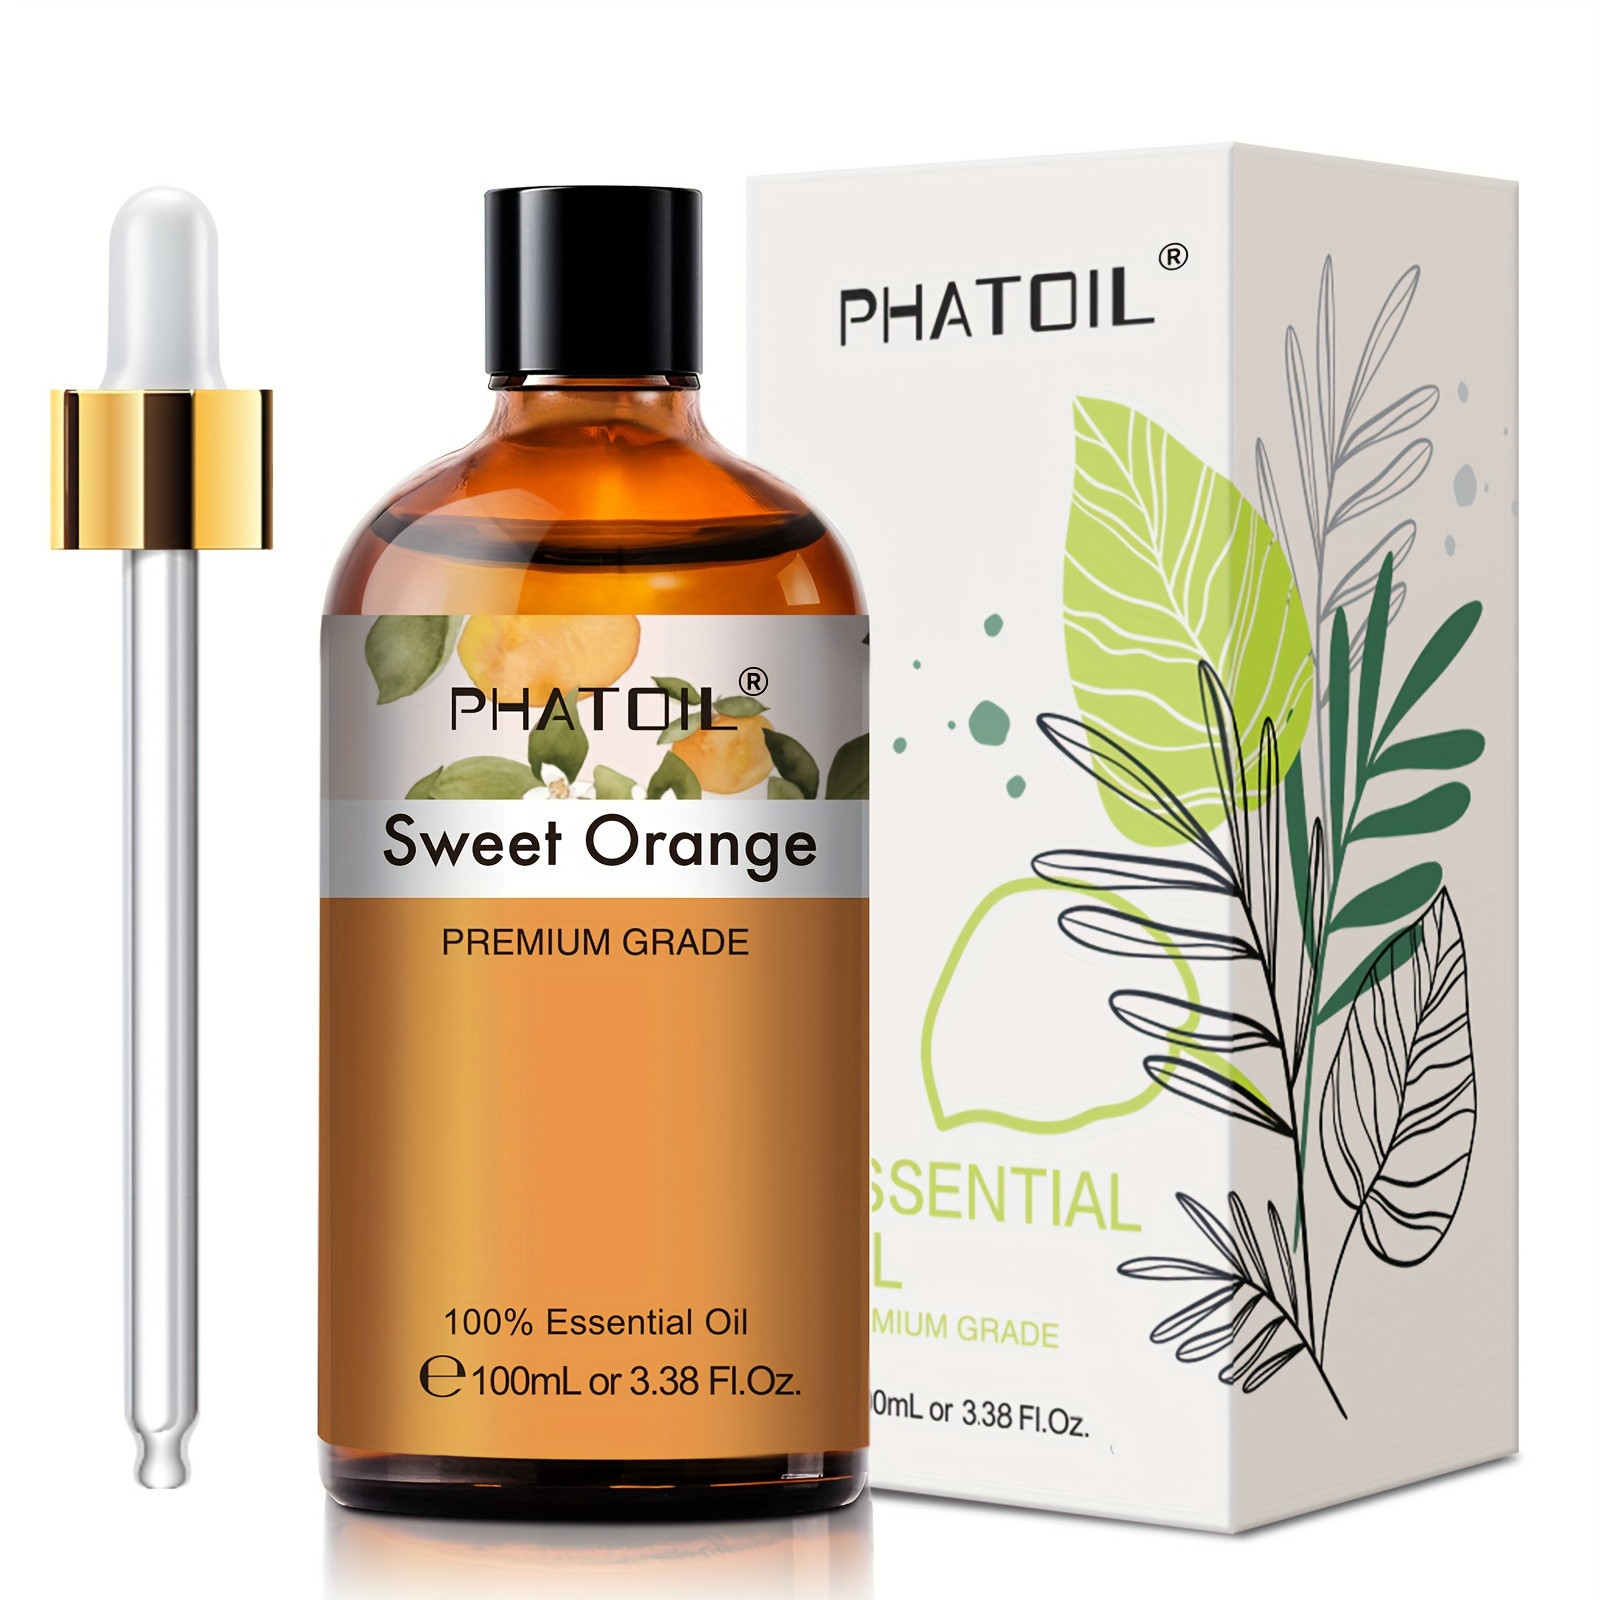 Vanilla Essential Oil 100% Pure Organic Therapeutic Grade Vanilla Oil for  Diffuser, Sleep, Perfume, Massage, Skin Care, Aromatherapy, Bath - 10ML